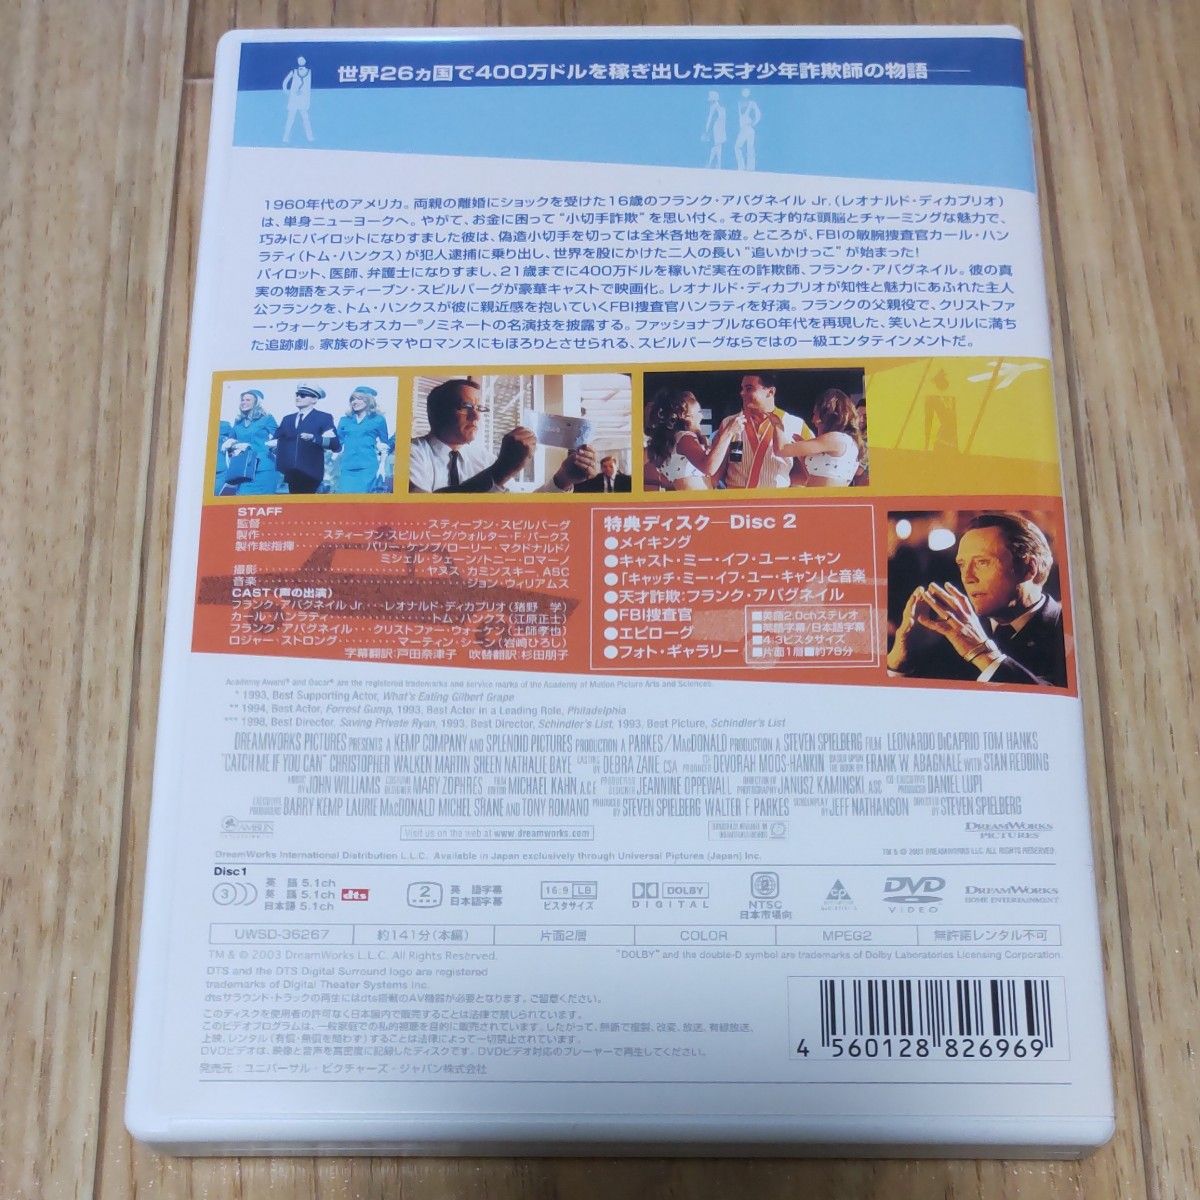 キャッチミーイフユーキャン [DVD]